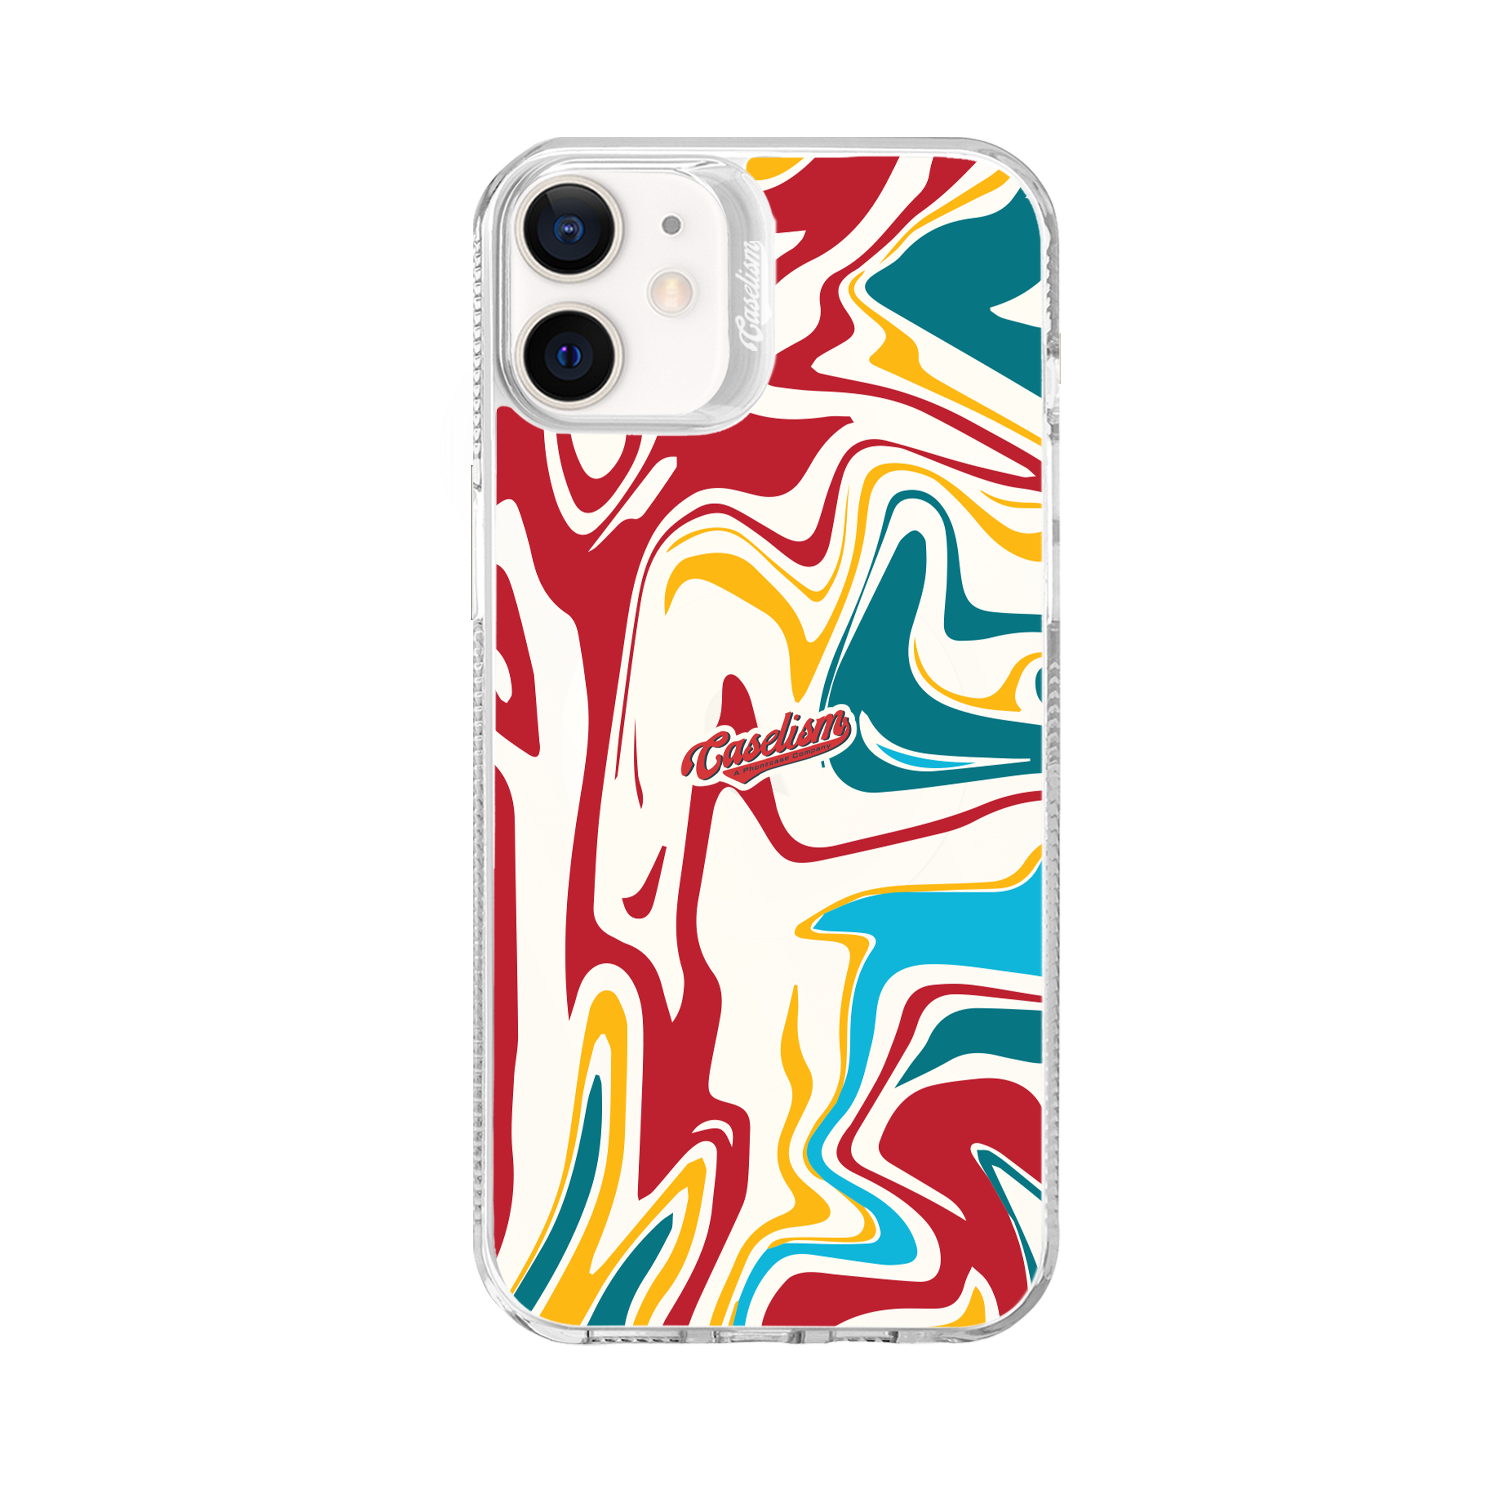 CASE007 - ColorLite Case for iPhone